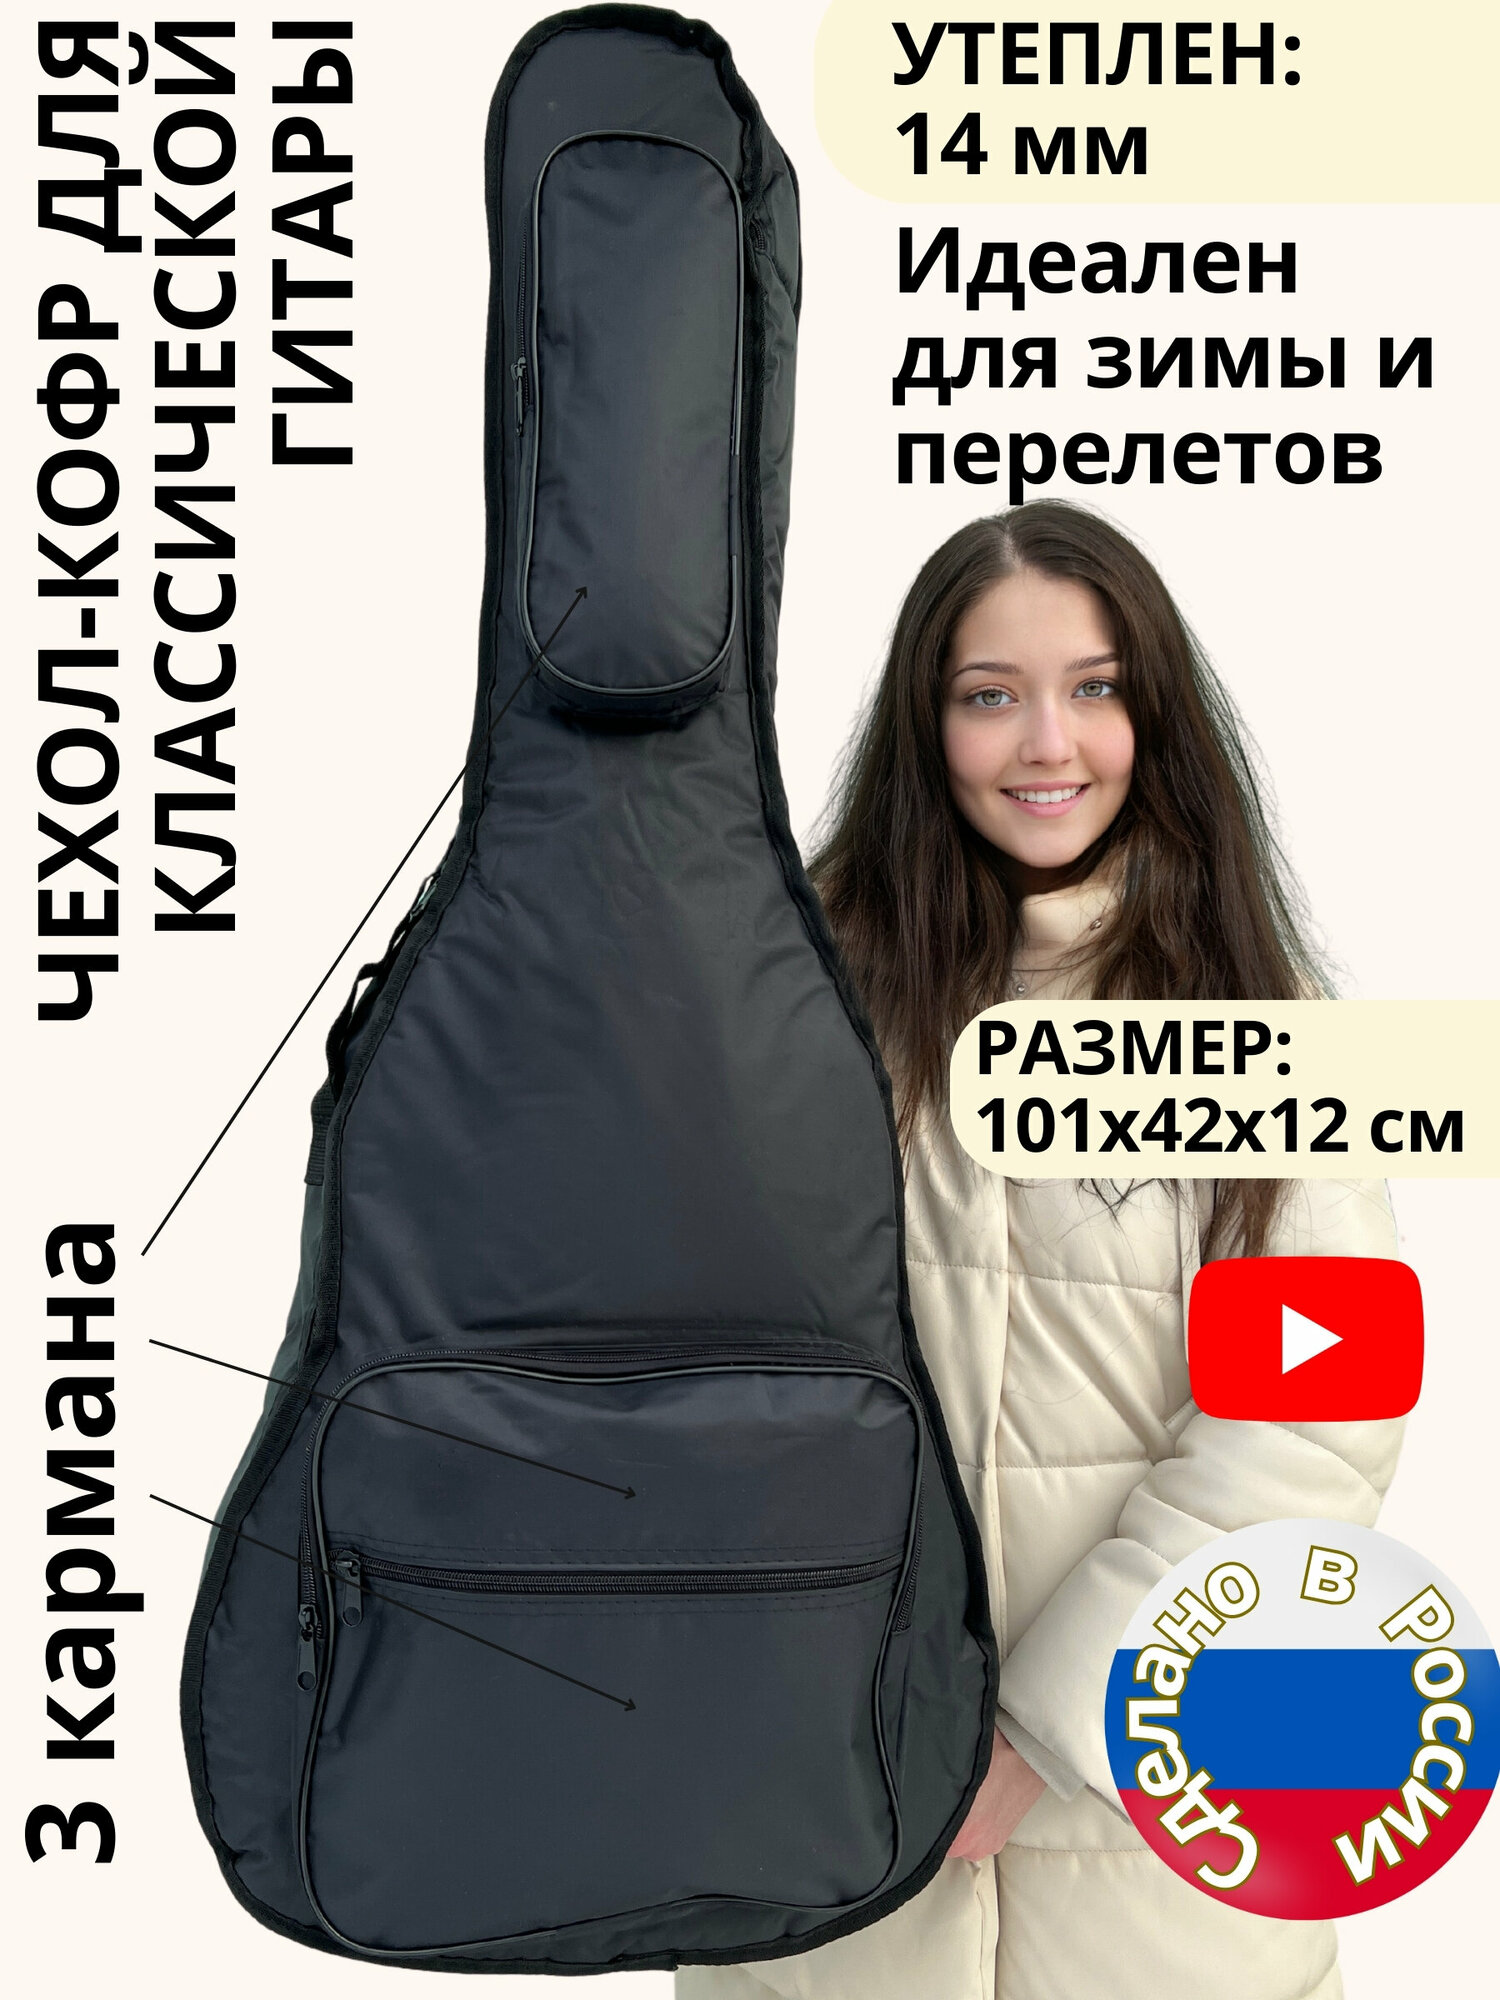 Чехол для классической гитары утеплен20мм. 3 кармана 2 регулируемых ремня. Идеален для зимы